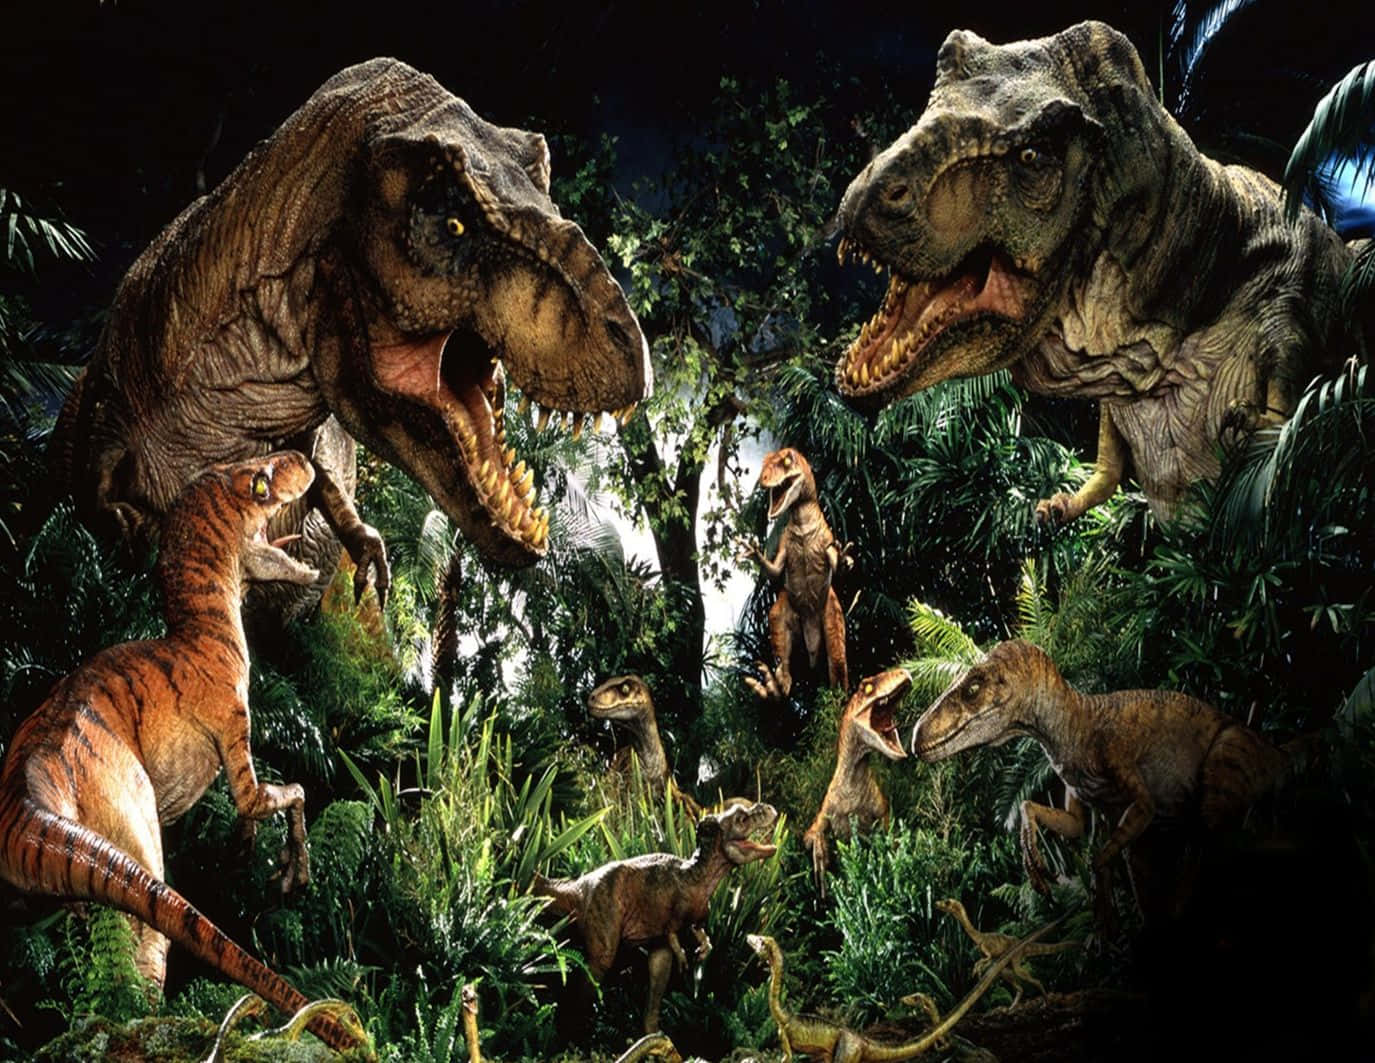 Welcome to Jurassic World – Where Dinosaurs Roam Free